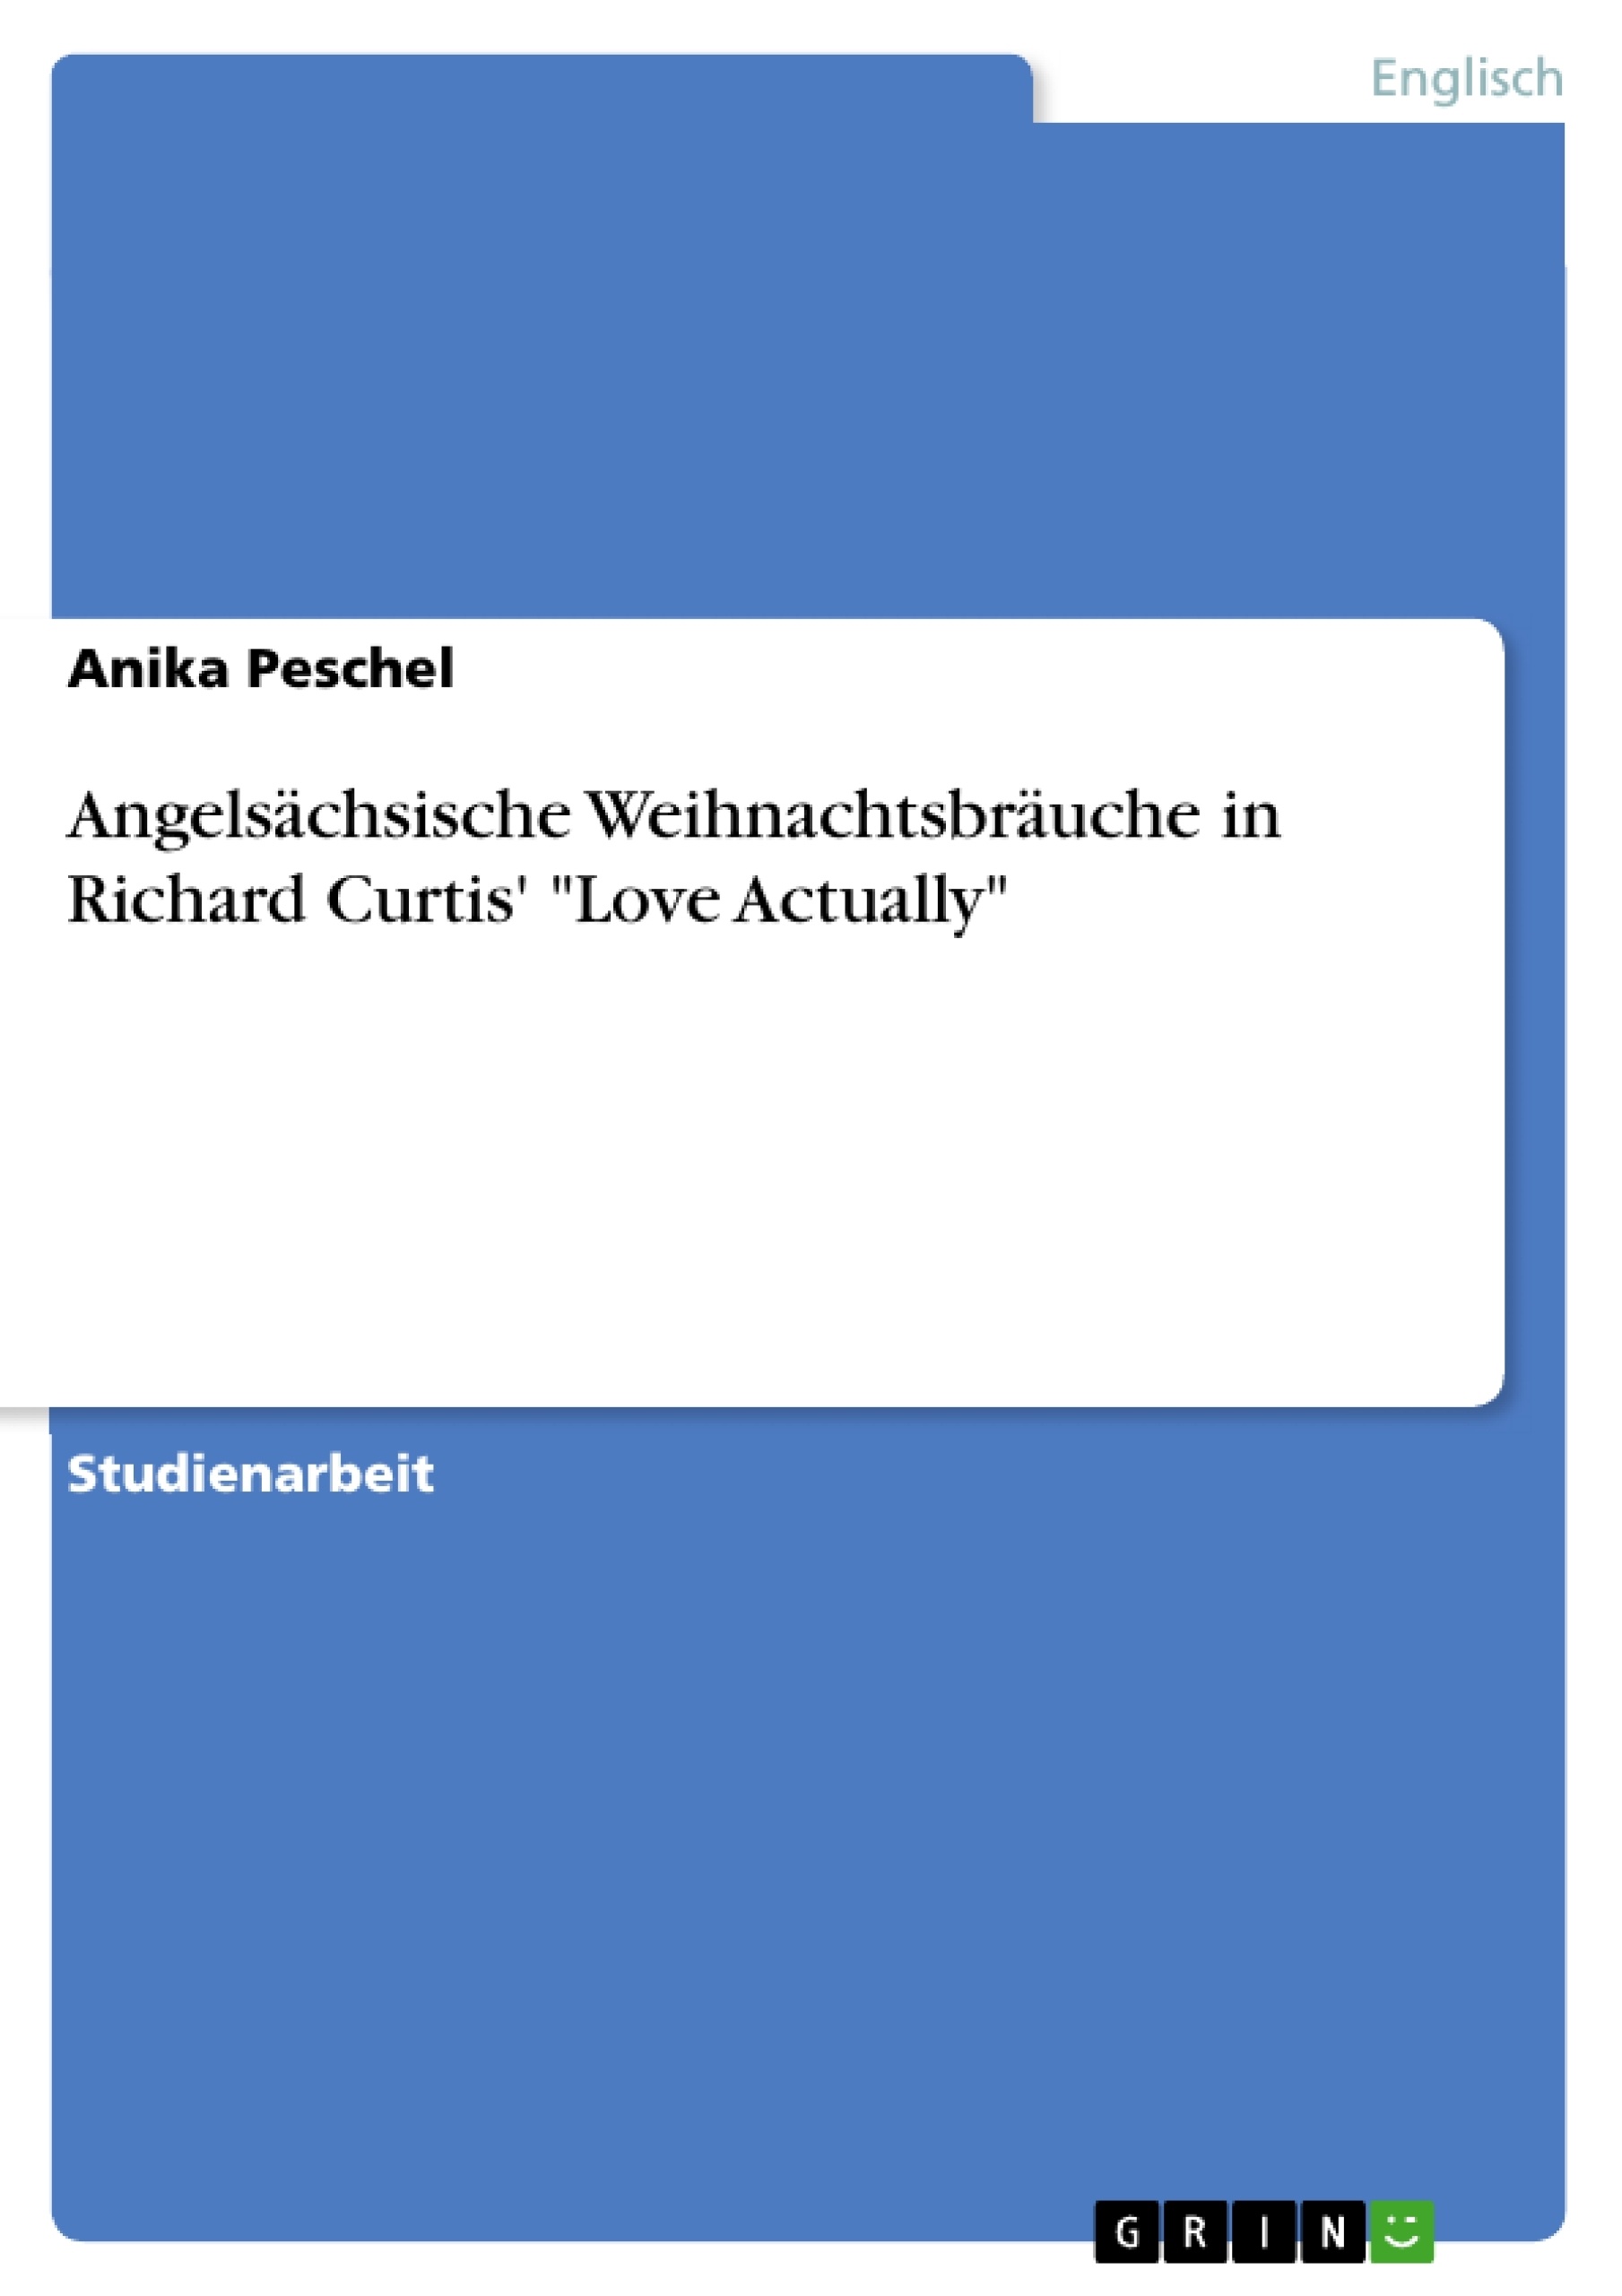 Title: Angelsächsische Weihnachtsbräuche in Richard Curtis' "Love Actually"